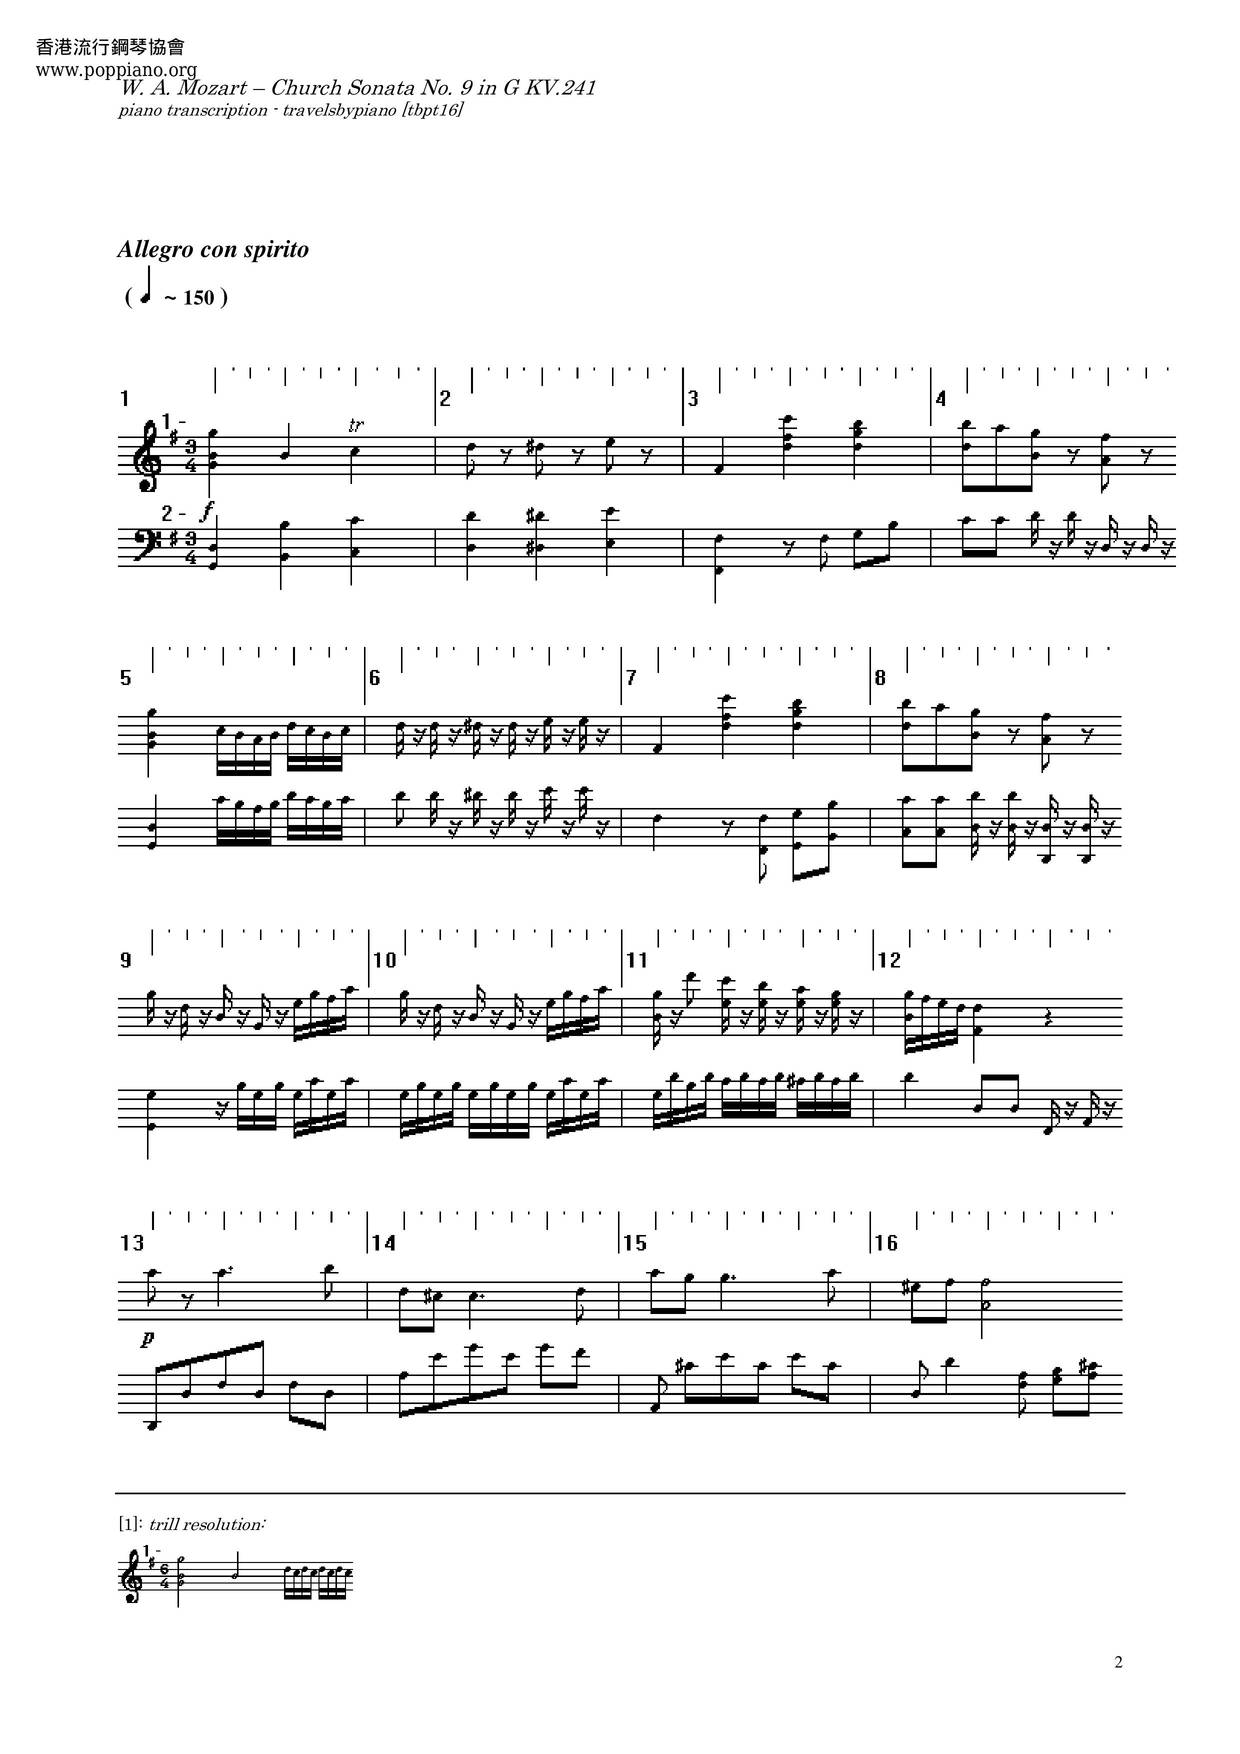 Church Sonata In G Major, K. 241 Score